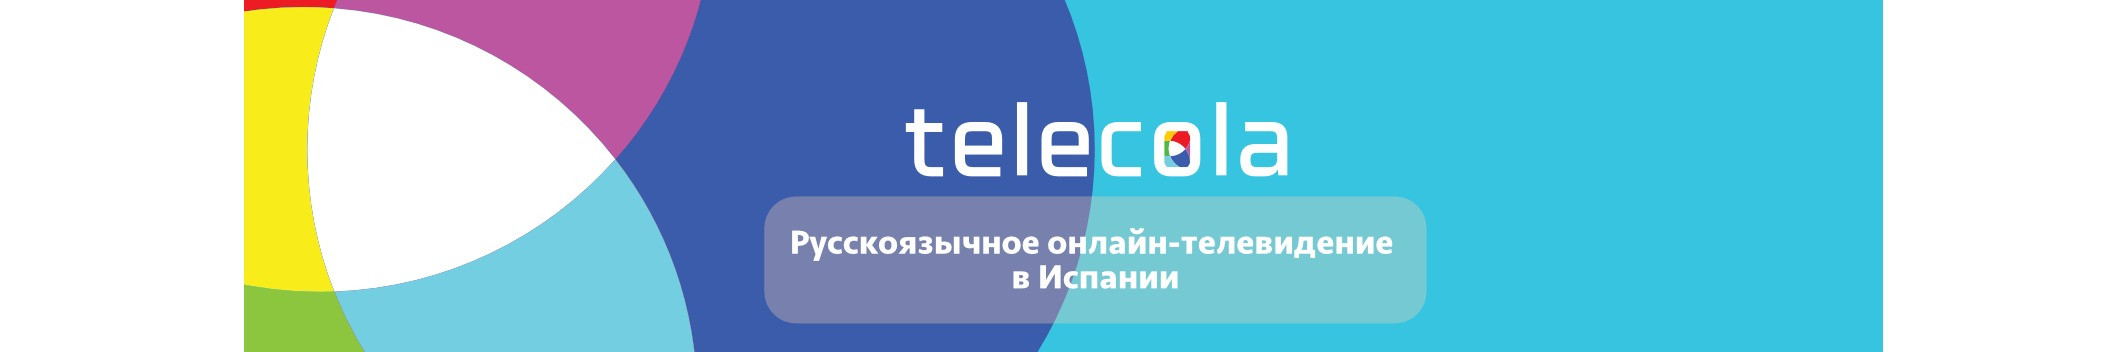 Telecolatv.es - русскоязычное телевидение в Испании